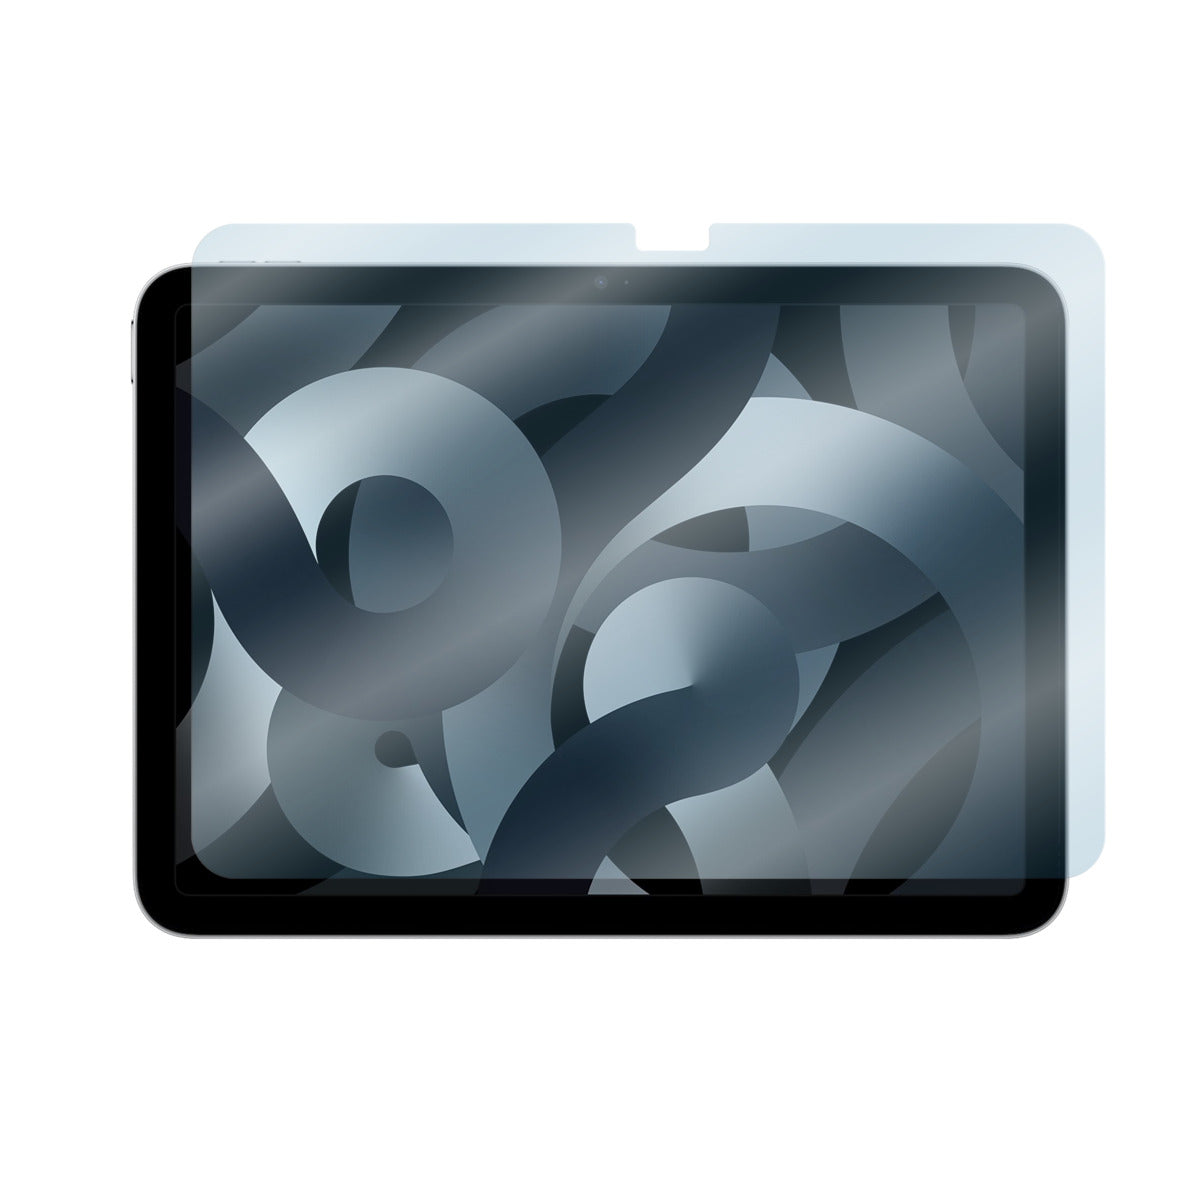 iPad mini Cases & Accessories